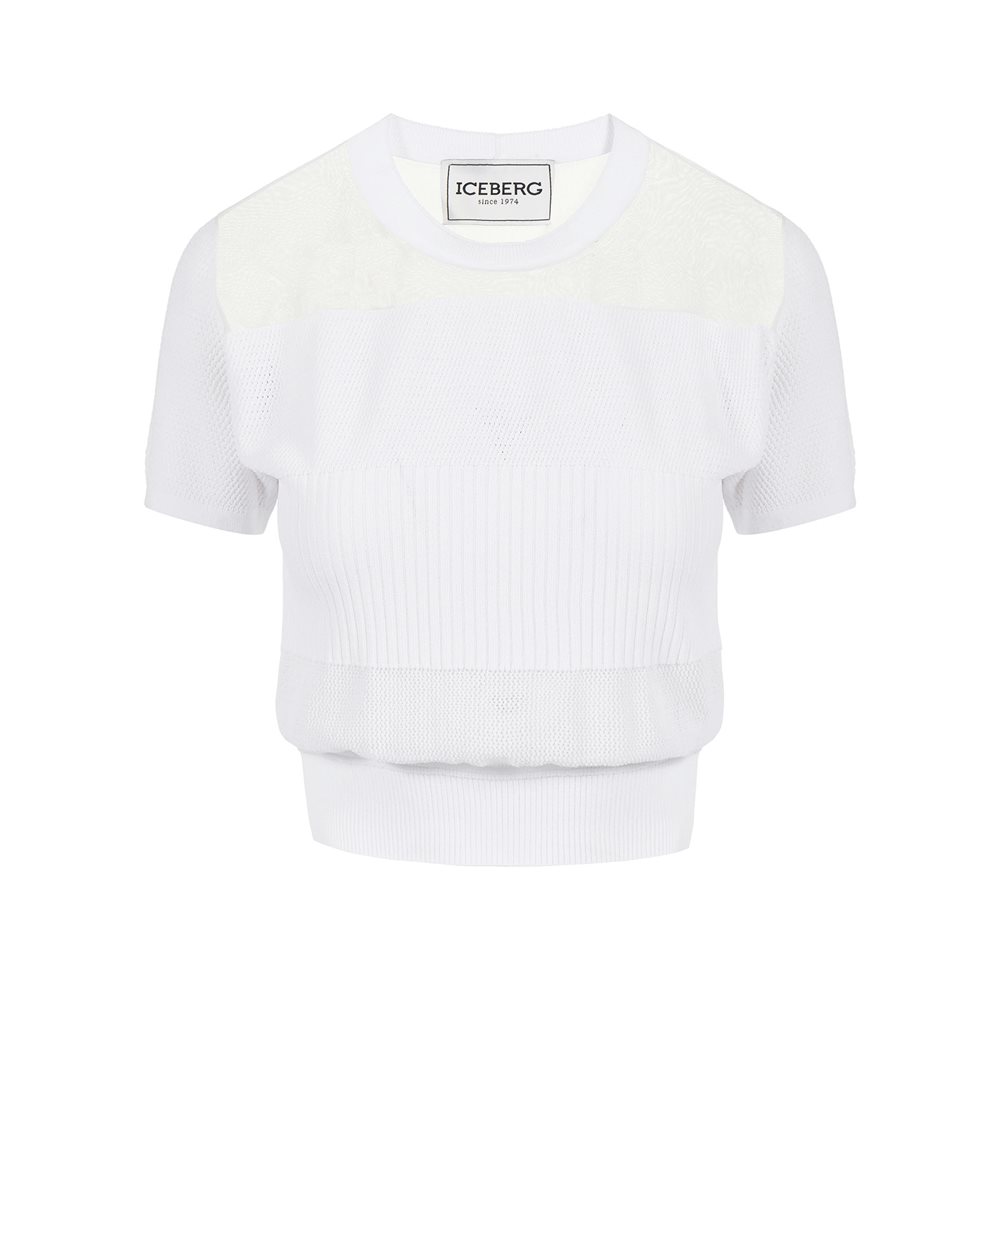 Top bianco con logo - Abbigliamento | Iceberg - Official Website